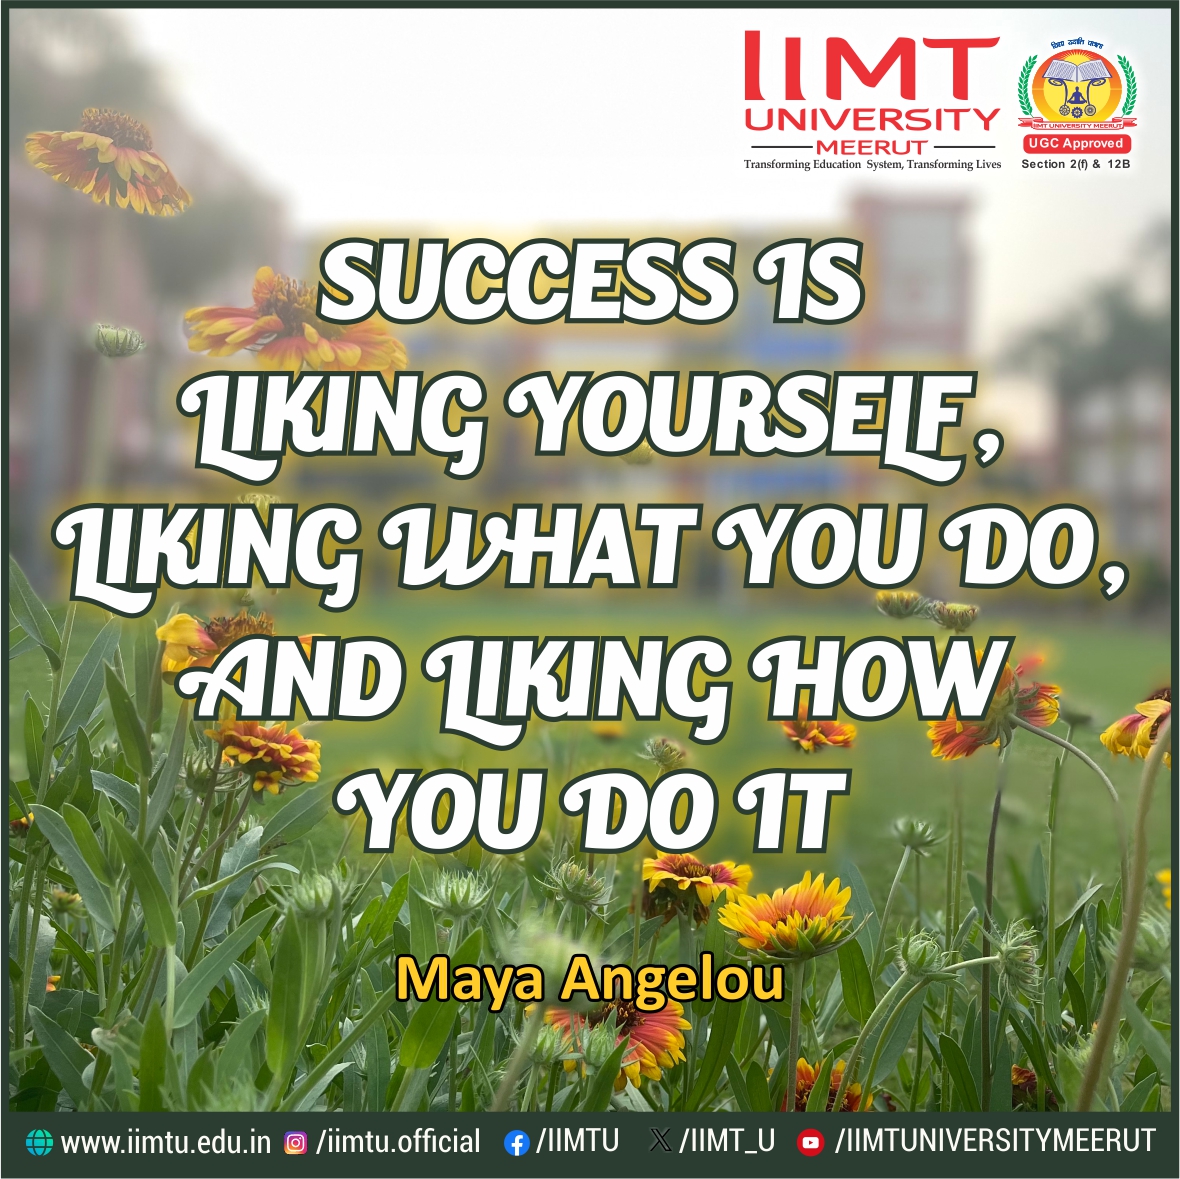 “Success is liking yourself, liking what you do, and liking how you do it.” —Maya Angelou

#IIMTUthoughtspot #QuoteofTheDay #FridayThoughts 

#IIMTU #TransformingEducationSystem #TransformingLives 

🌐iimtu.edu.in  📱+91-9045954124 

#AdmissionsOpen2024 #IIMTUniversity